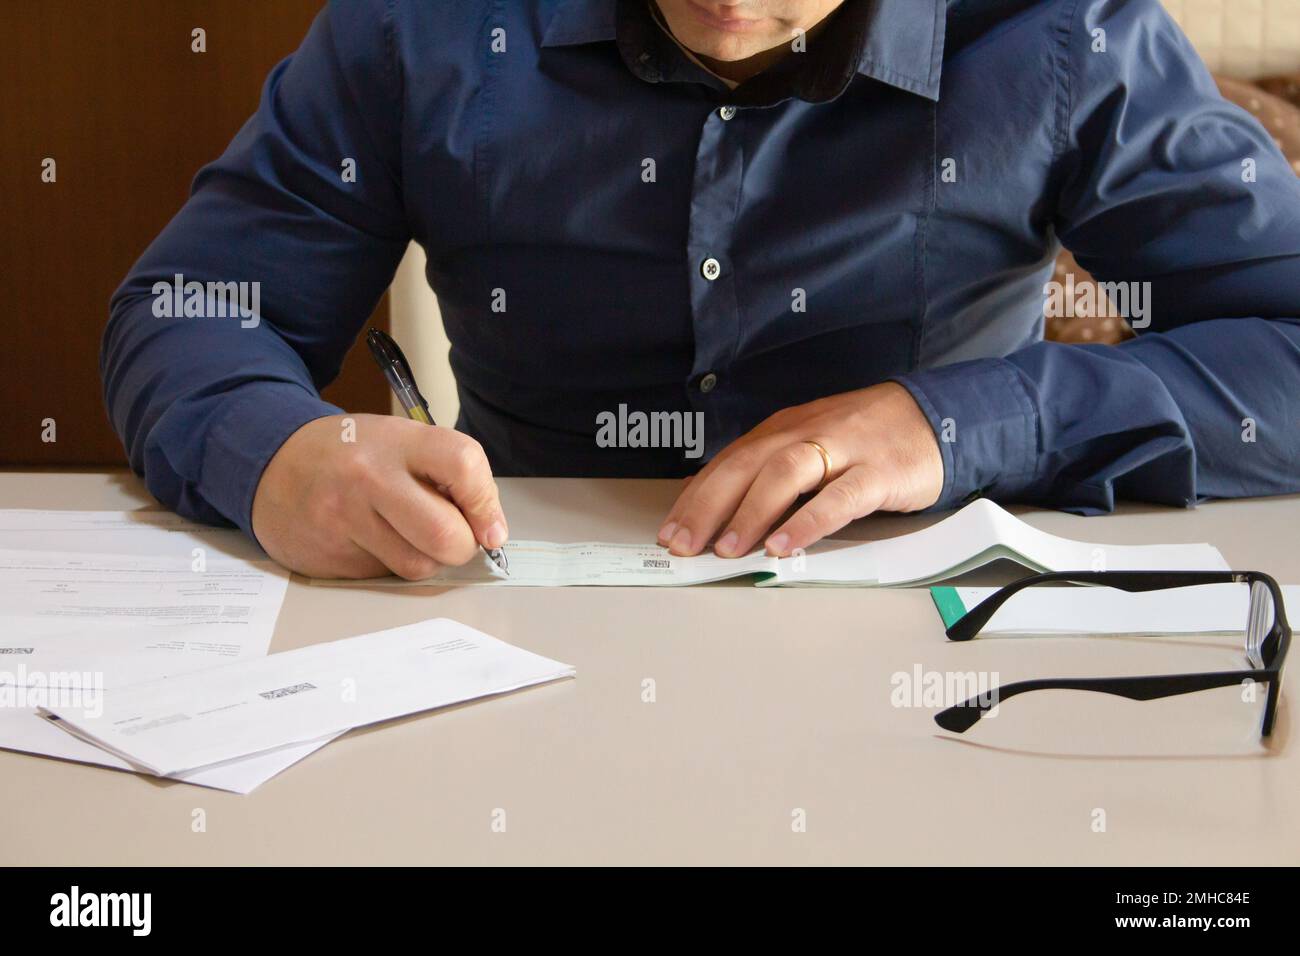 Immagine di un uomo seduto dietro una scrivania con fatture e fatture sparse intorno alla firma di un assegno di pagamento. Foto Stock